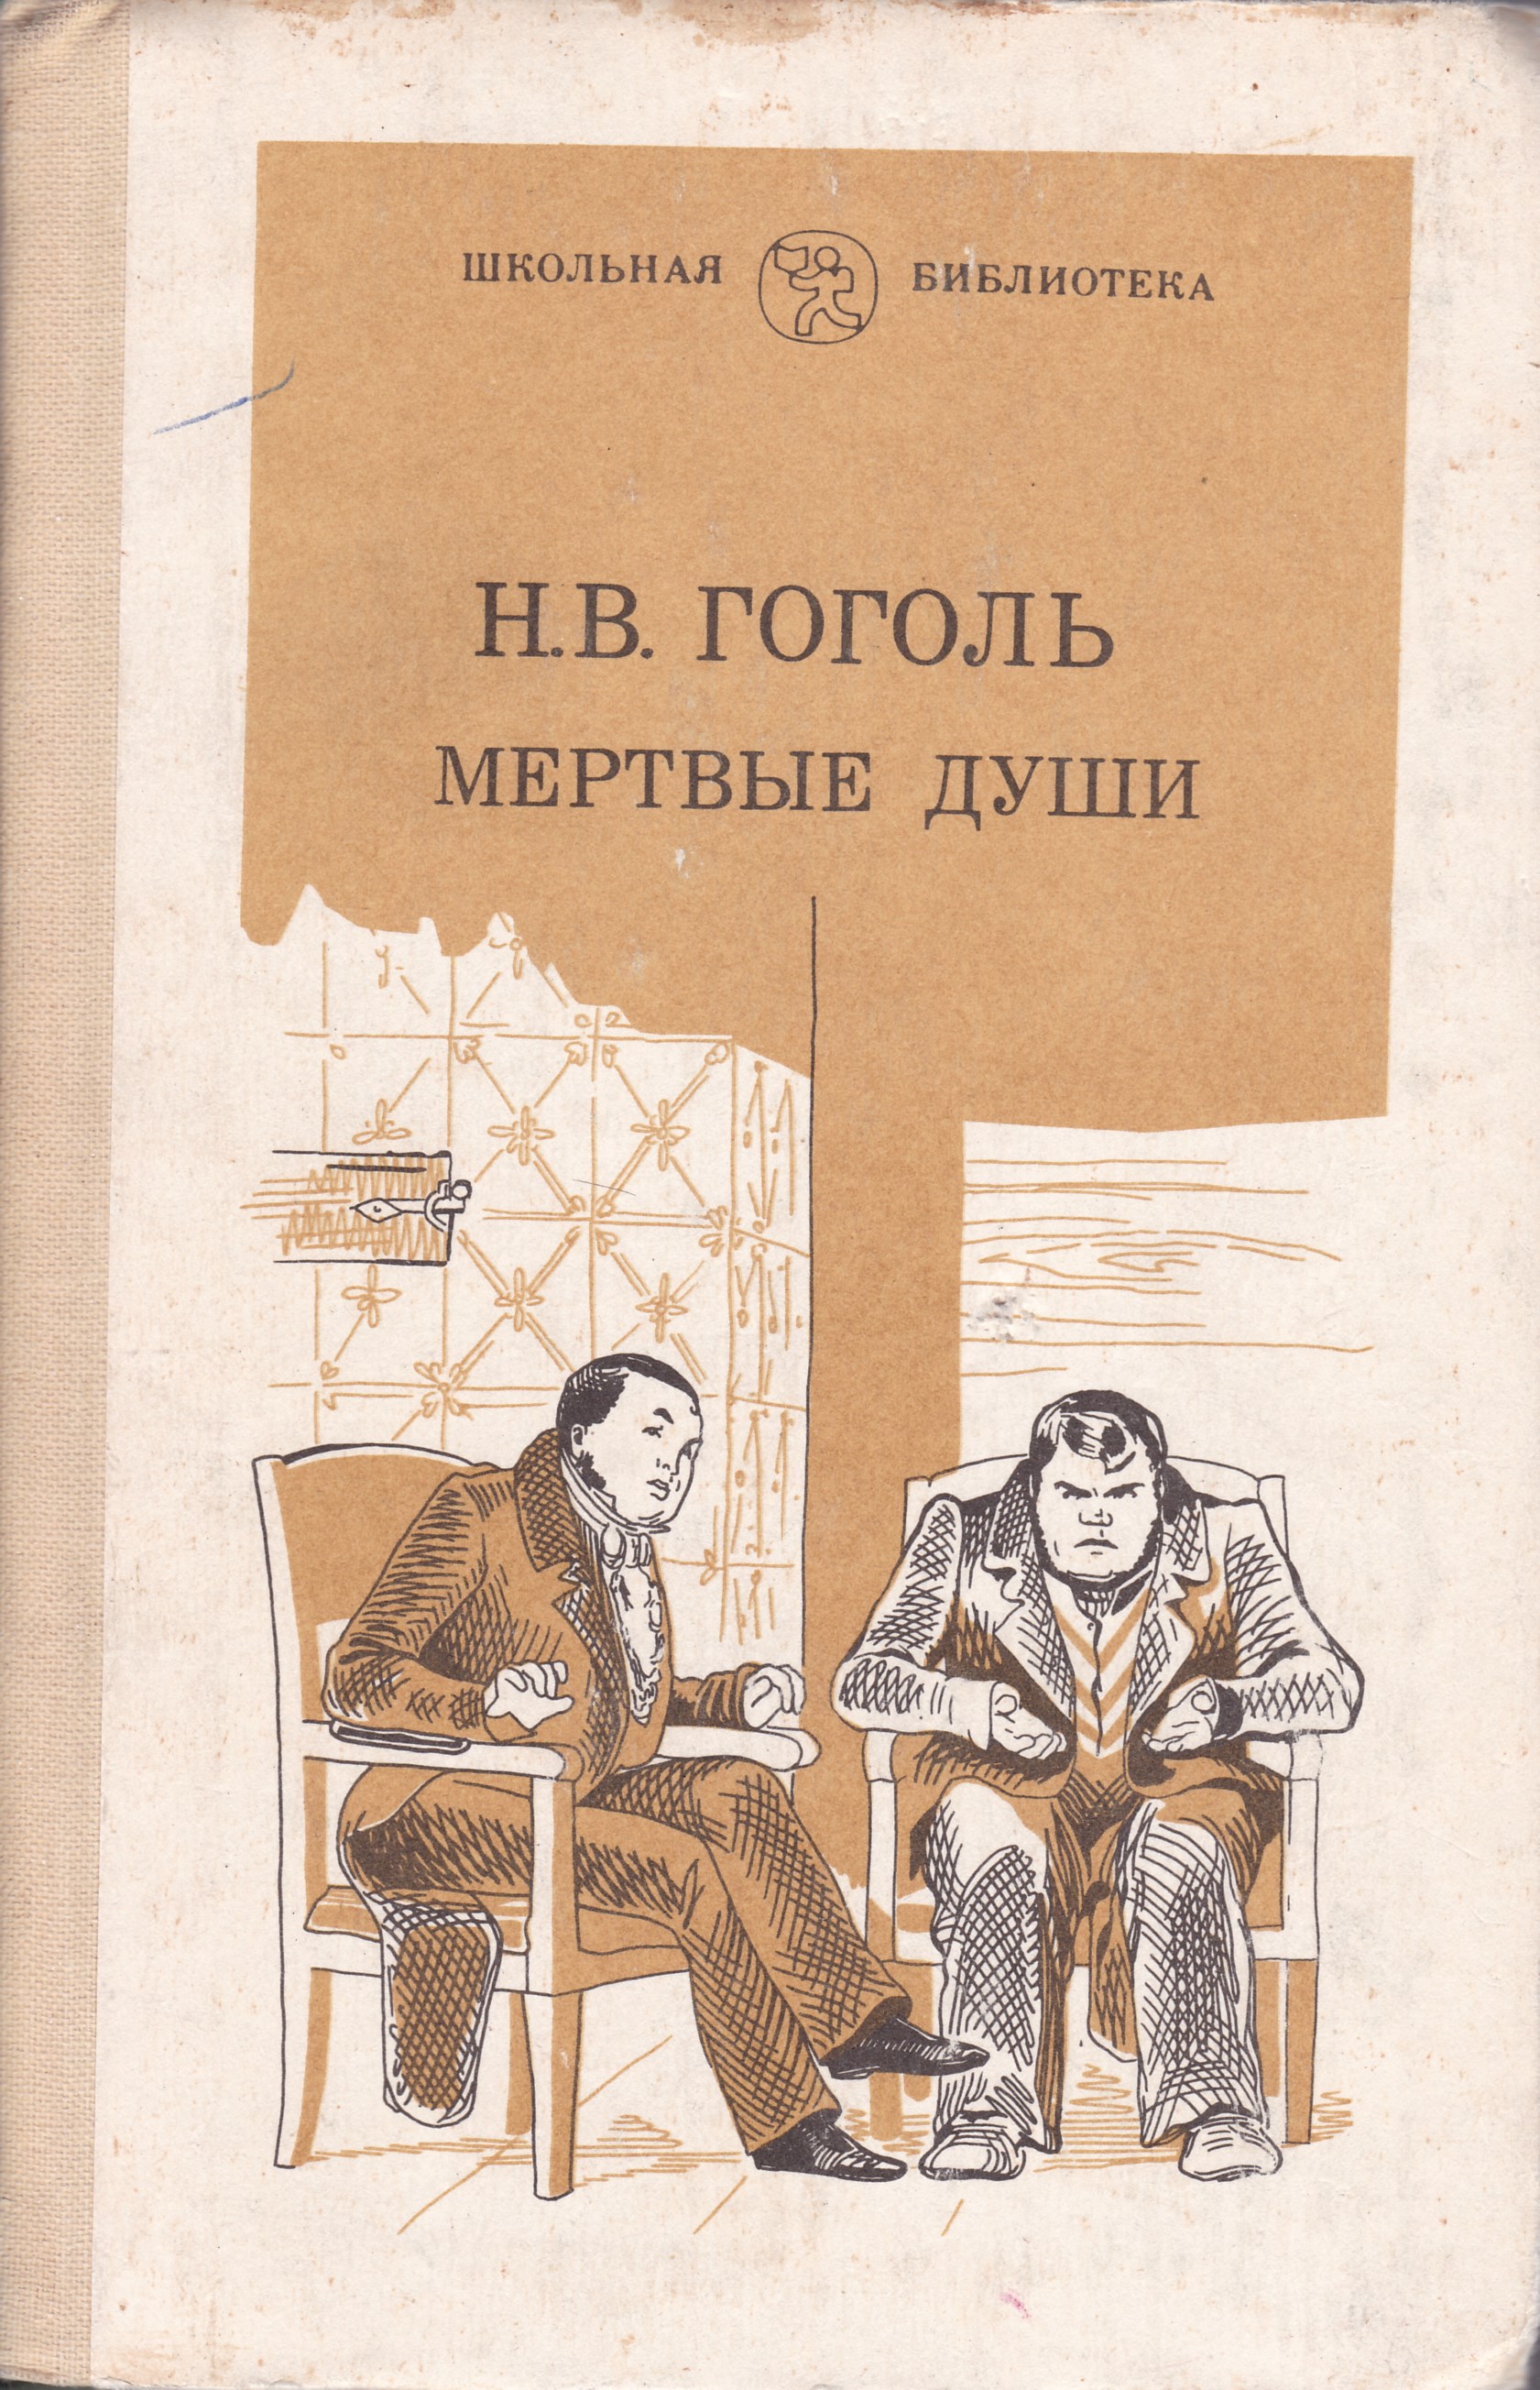 Читать произведение мертвые души. Гоголь мертвые души Школьная библиотека. Гоголь н. в. "мертвые души" 1839. Гоголь мертвые души книга.